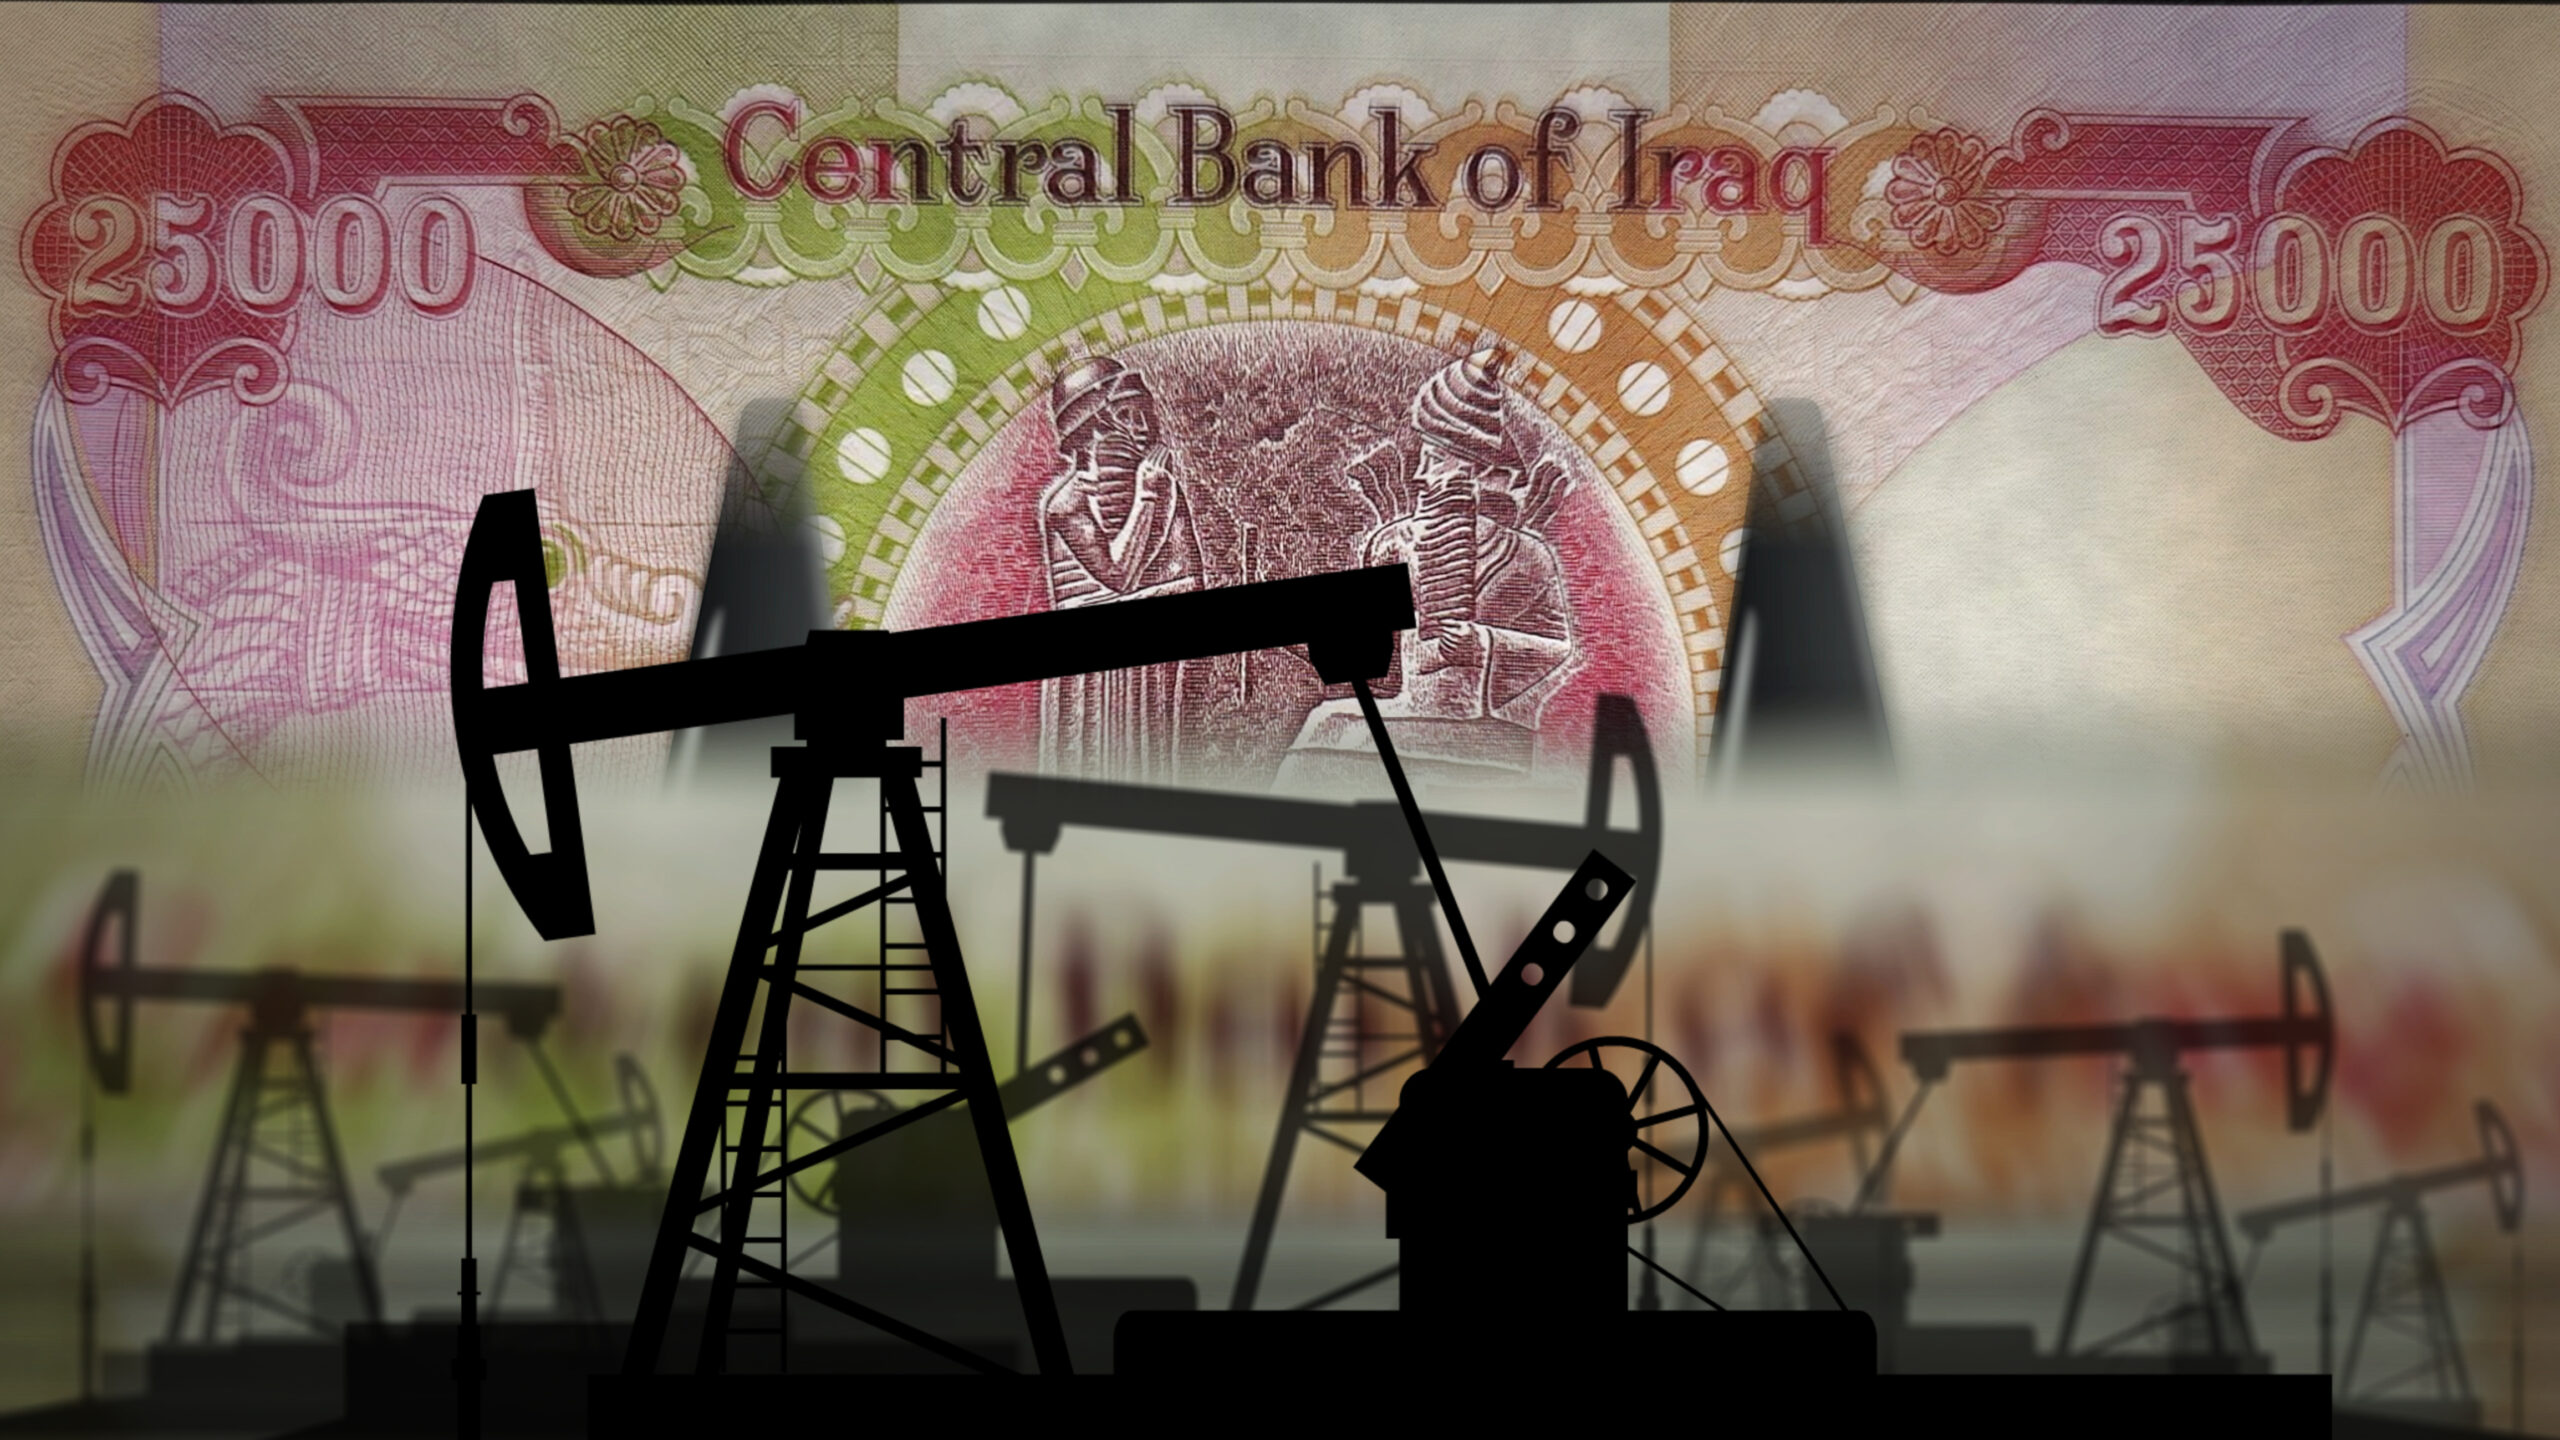 Rezervele de petrol din Irak sunt considerate a cincea cea mai mare rezervă dovedită de petrol din lume, cu 140 de miliarde de barili. Sursa foto: dreamstime